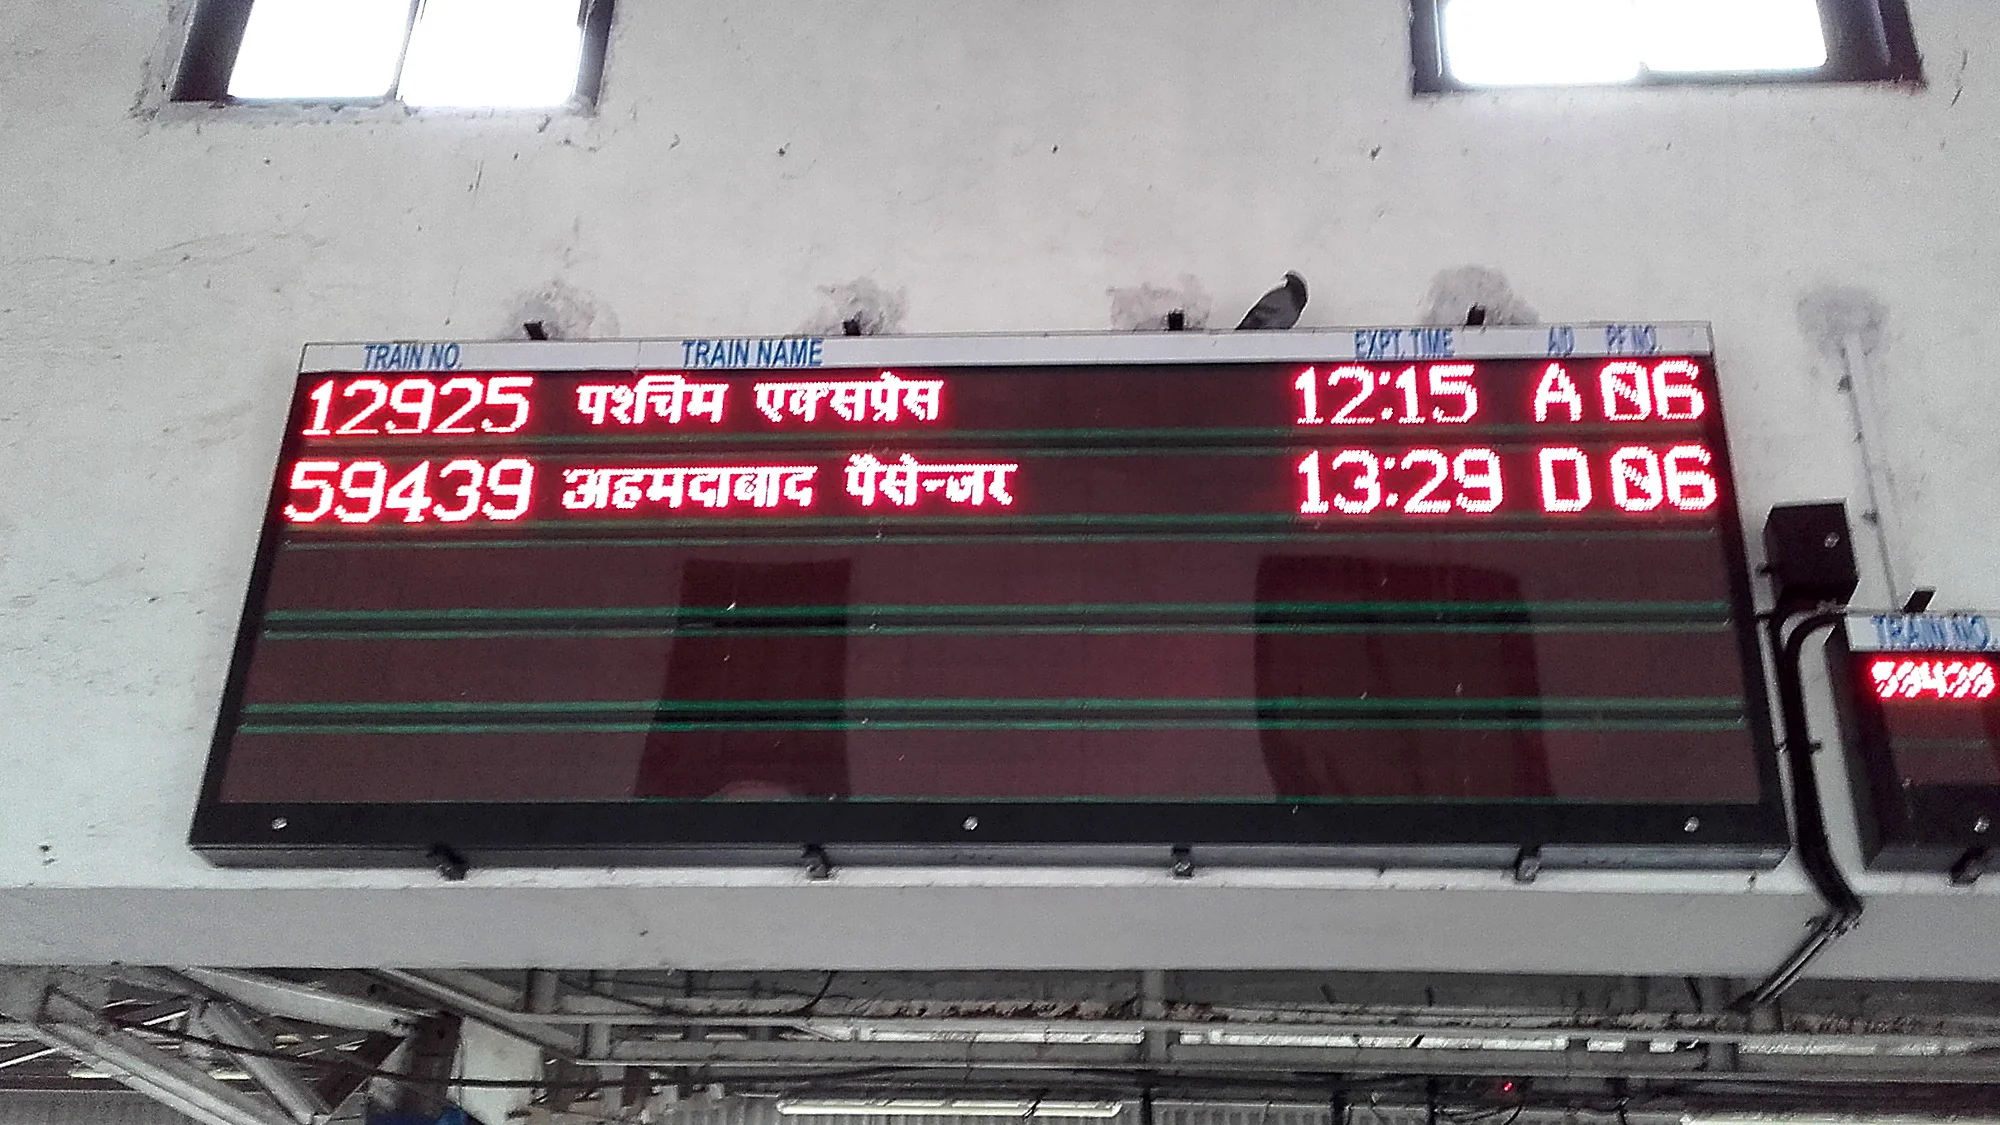 Train timetable with writing in Hindi in Mumbai.